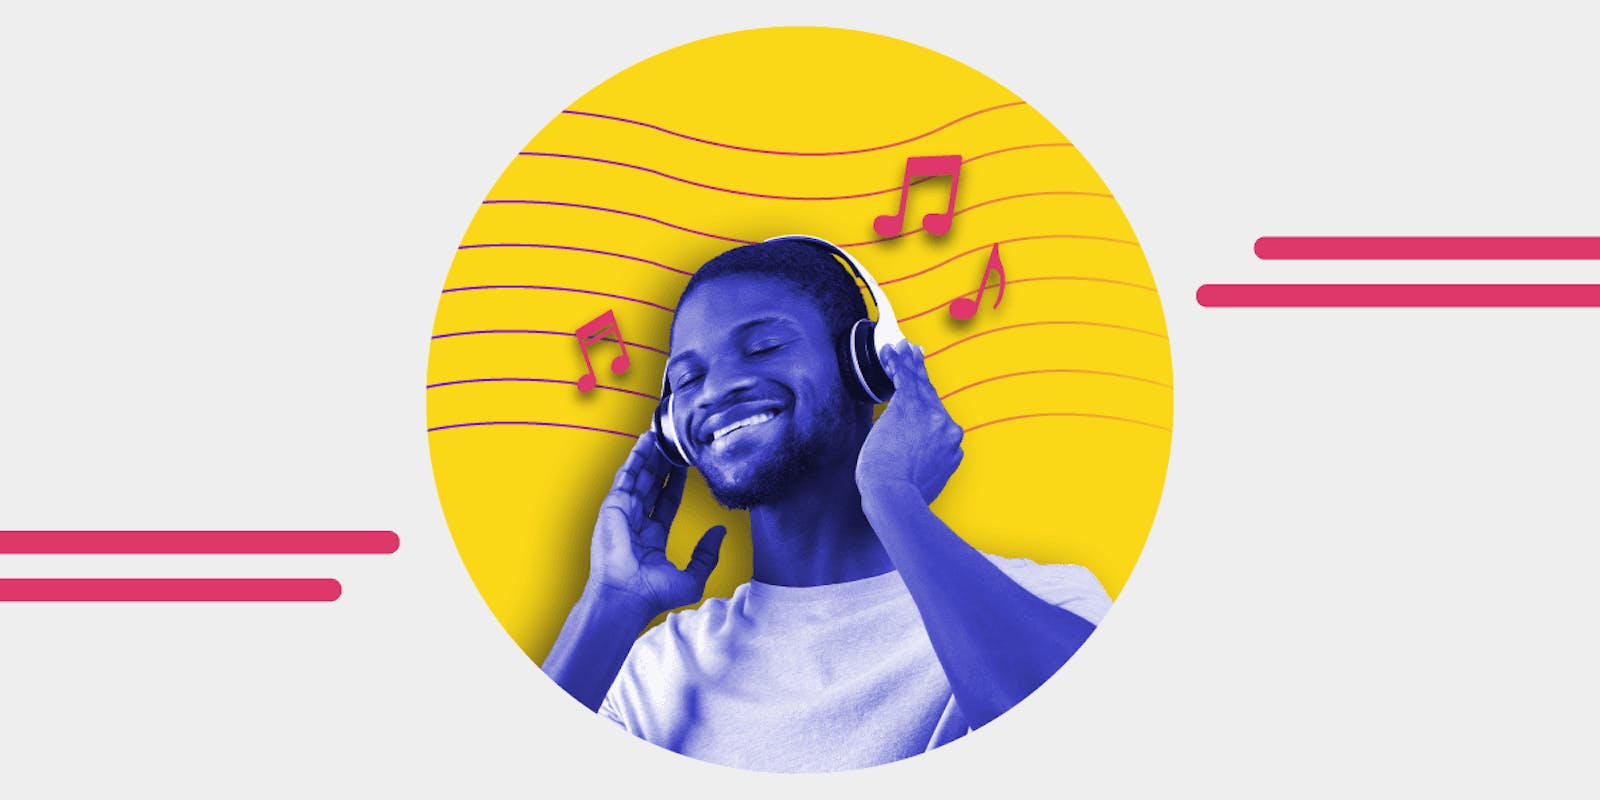 Shazam permet d'obtenir 5 mois d'Apple Music gratuits (6 mois via